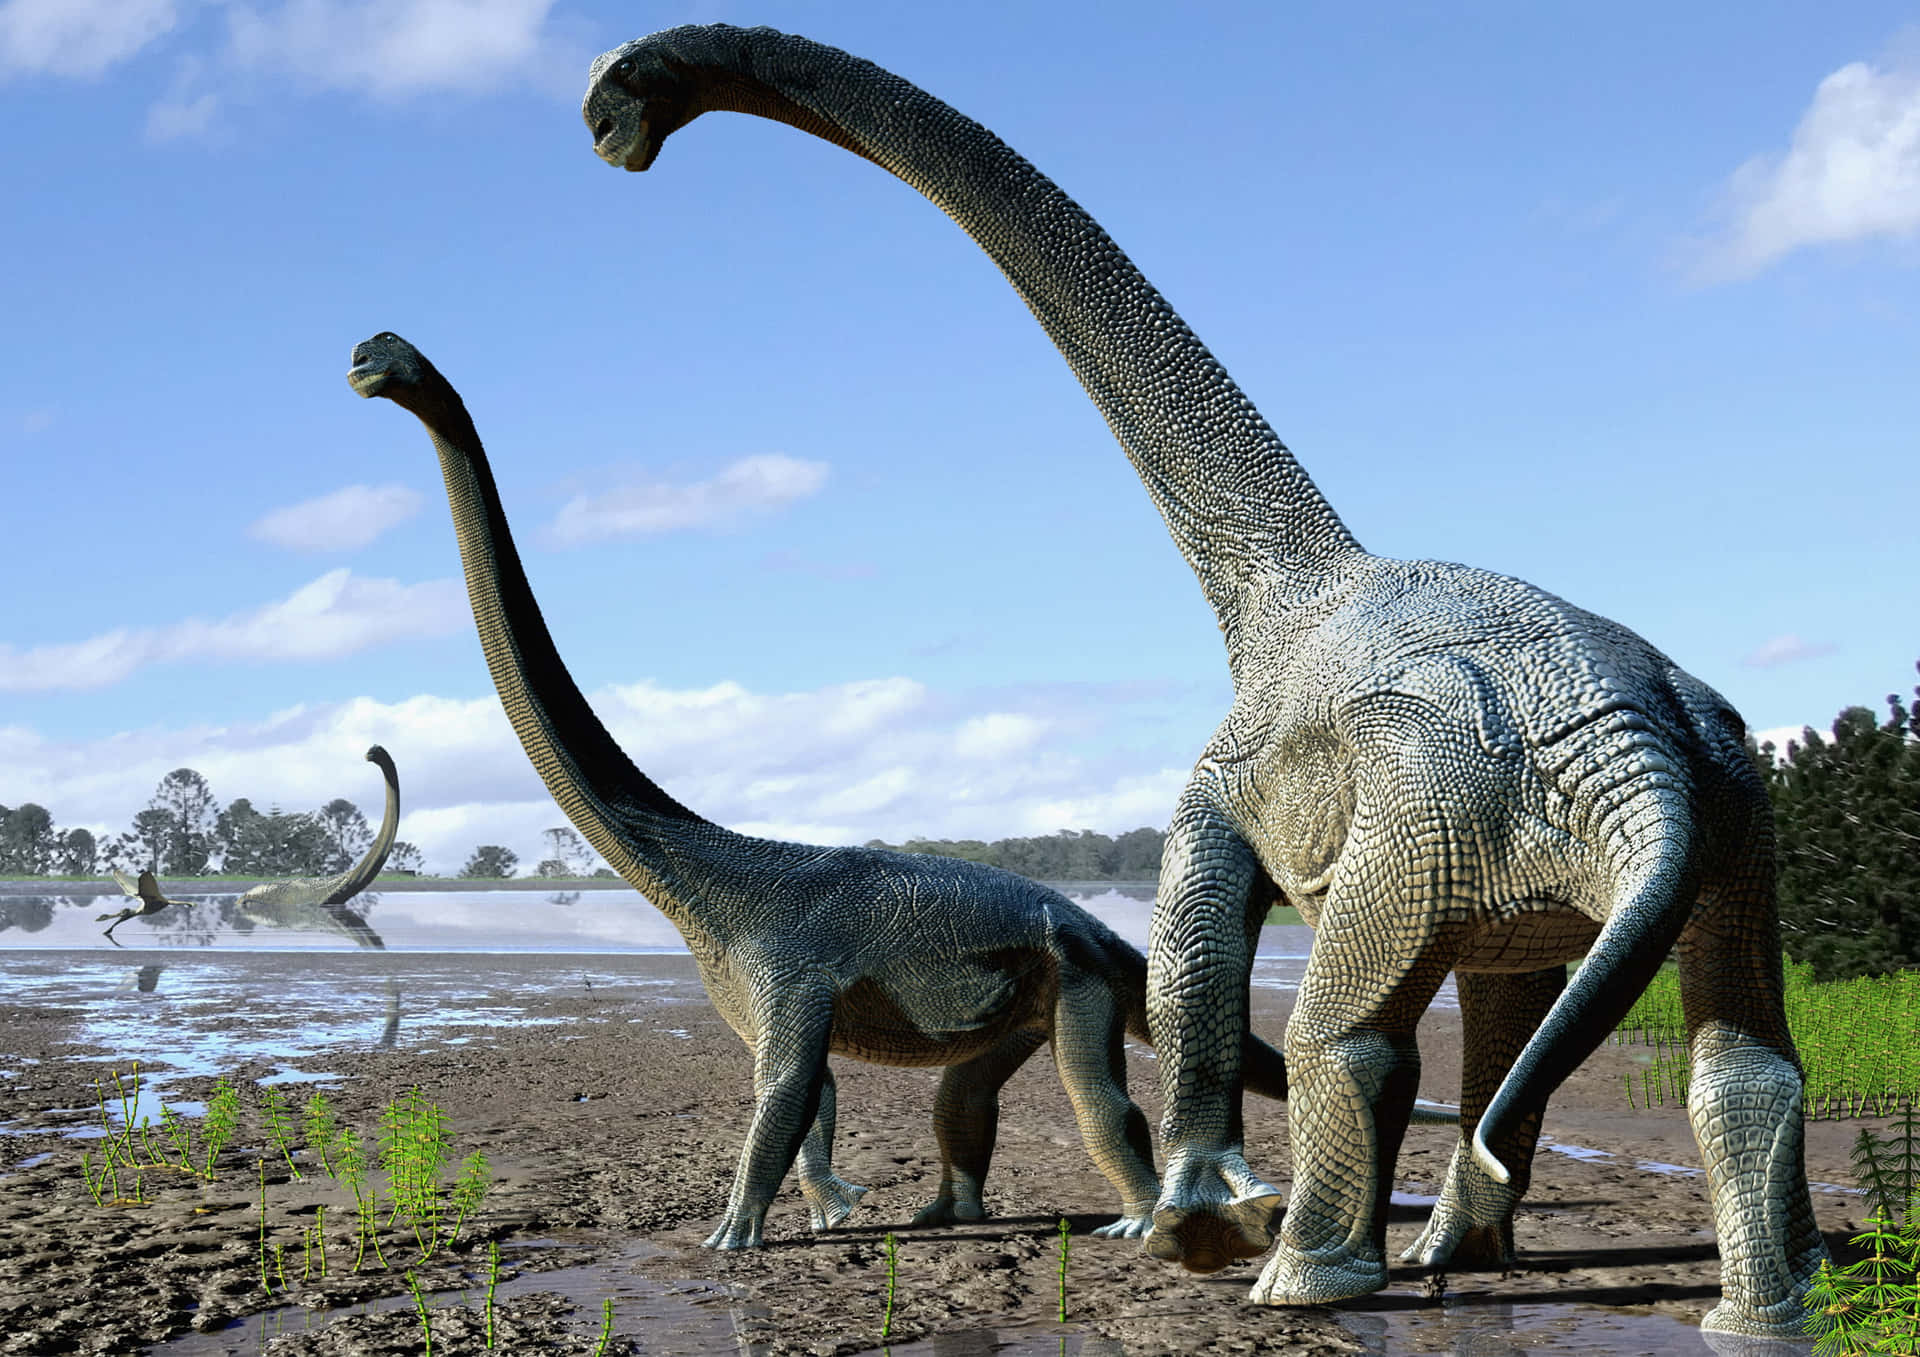 Savannasaurustitanosaur Dinosaur Bild